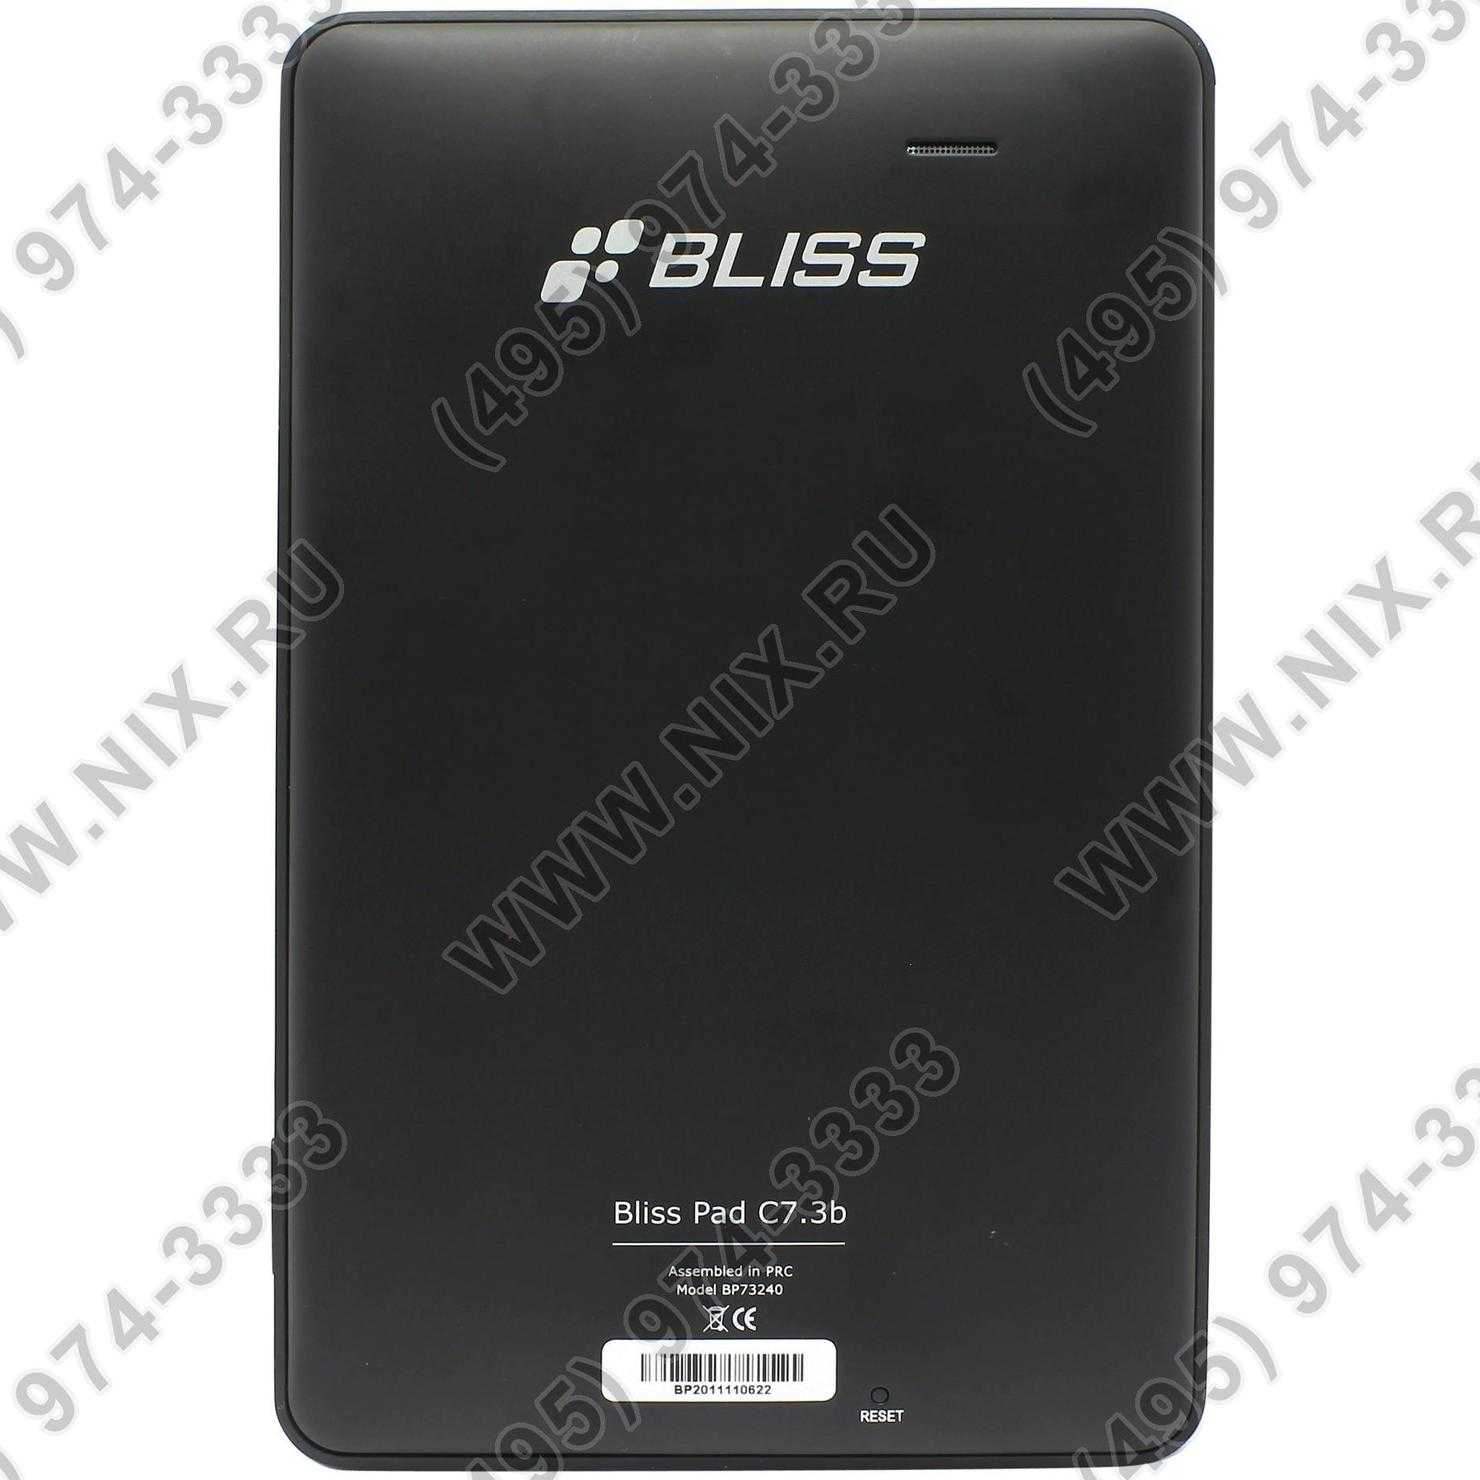 Bliss pad r9020 - купить , скидки, цена, отзывы, обзор, характеристики - планшеты